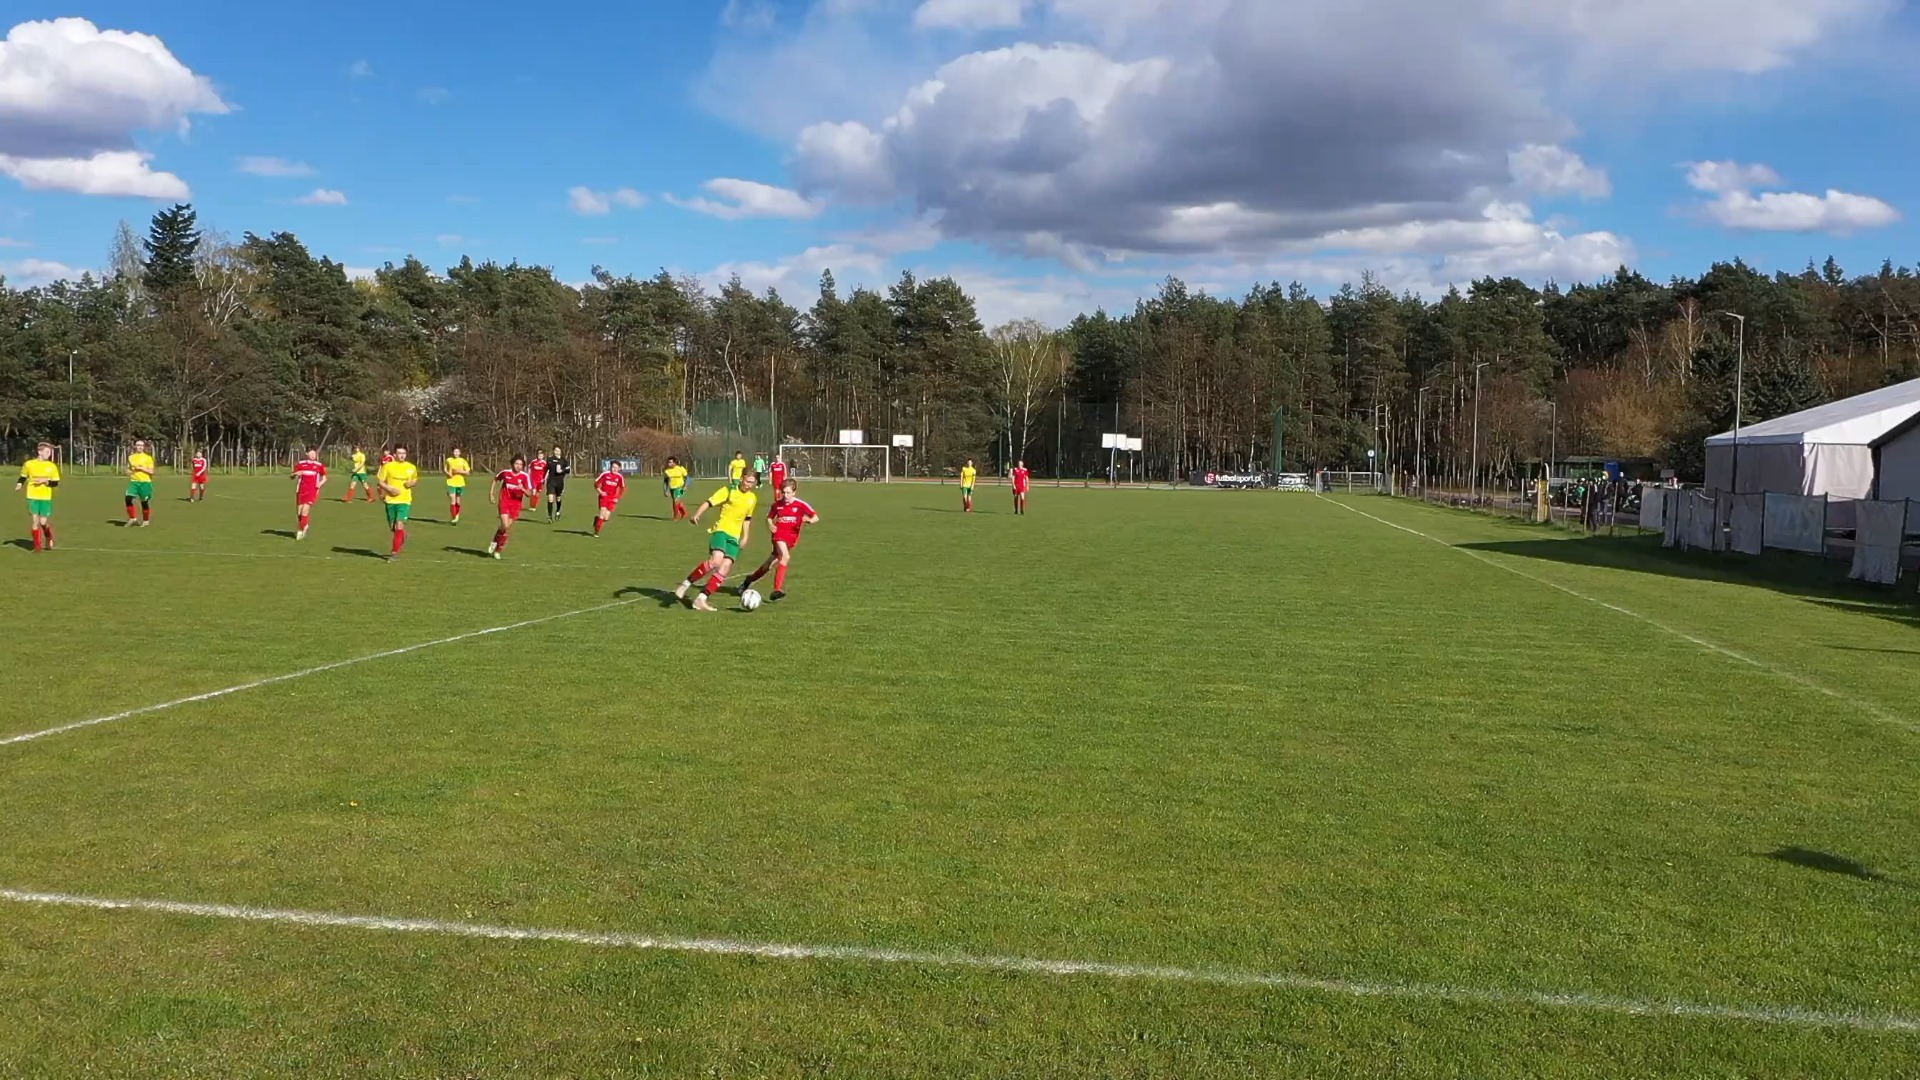 Piłkarze na zielonej murawie boiska piłkarskiego. Jedna z drużyn ma żółte stroje, druga czerwone.